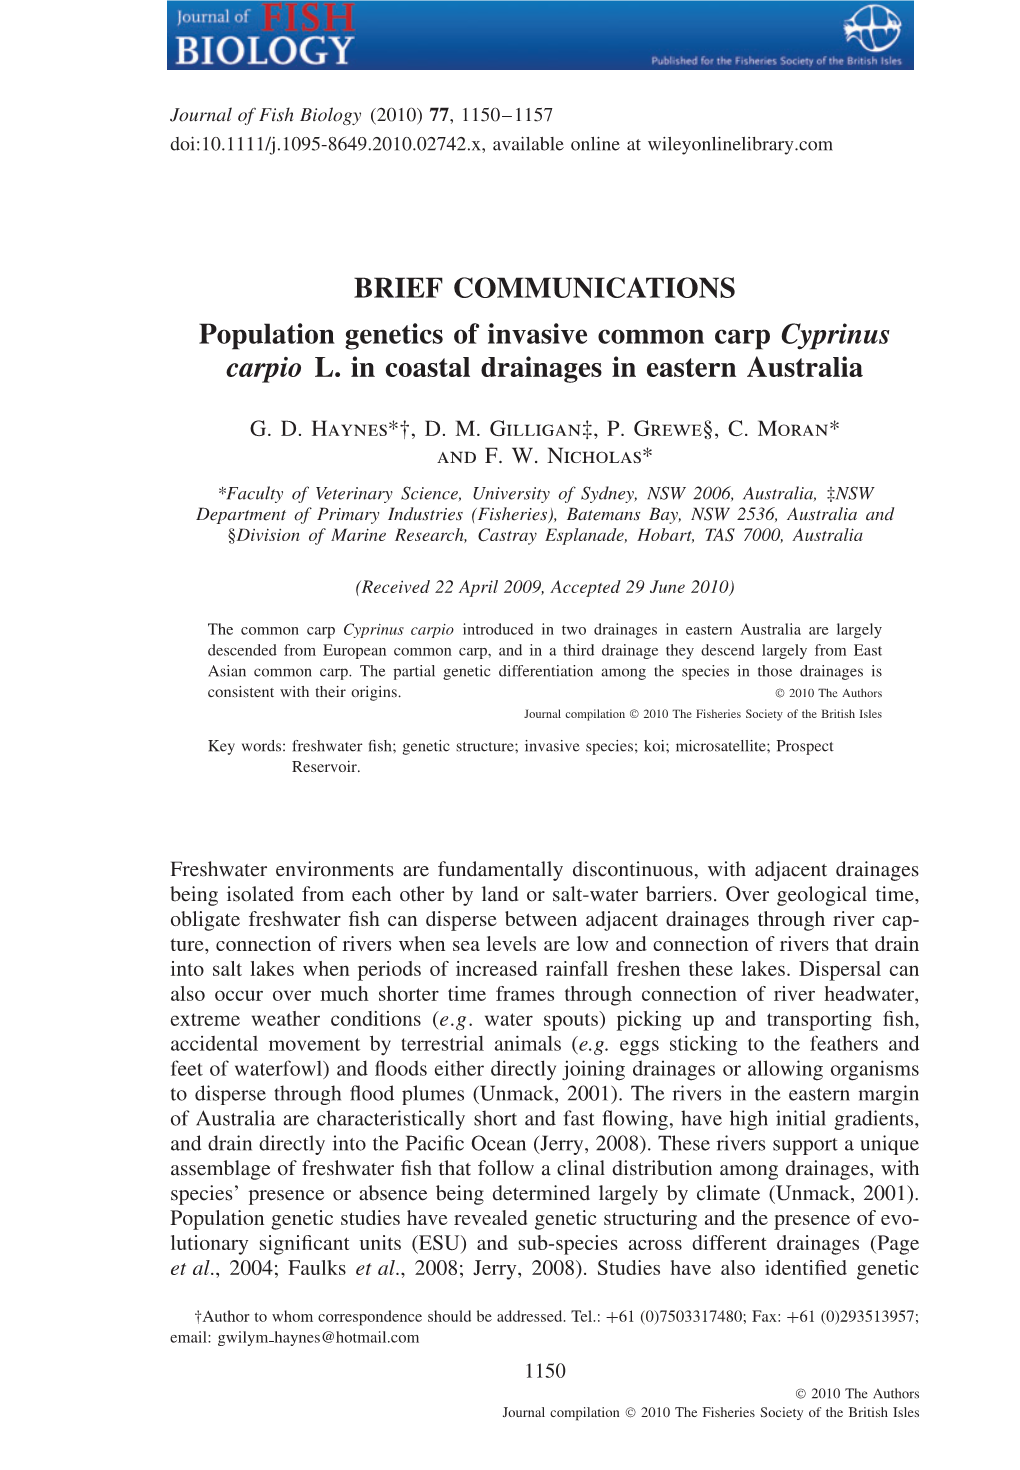 Population Genetics of Invasive Common Carp Cyprinus Carpio L. in Coastal Drainages in Eastern Australia